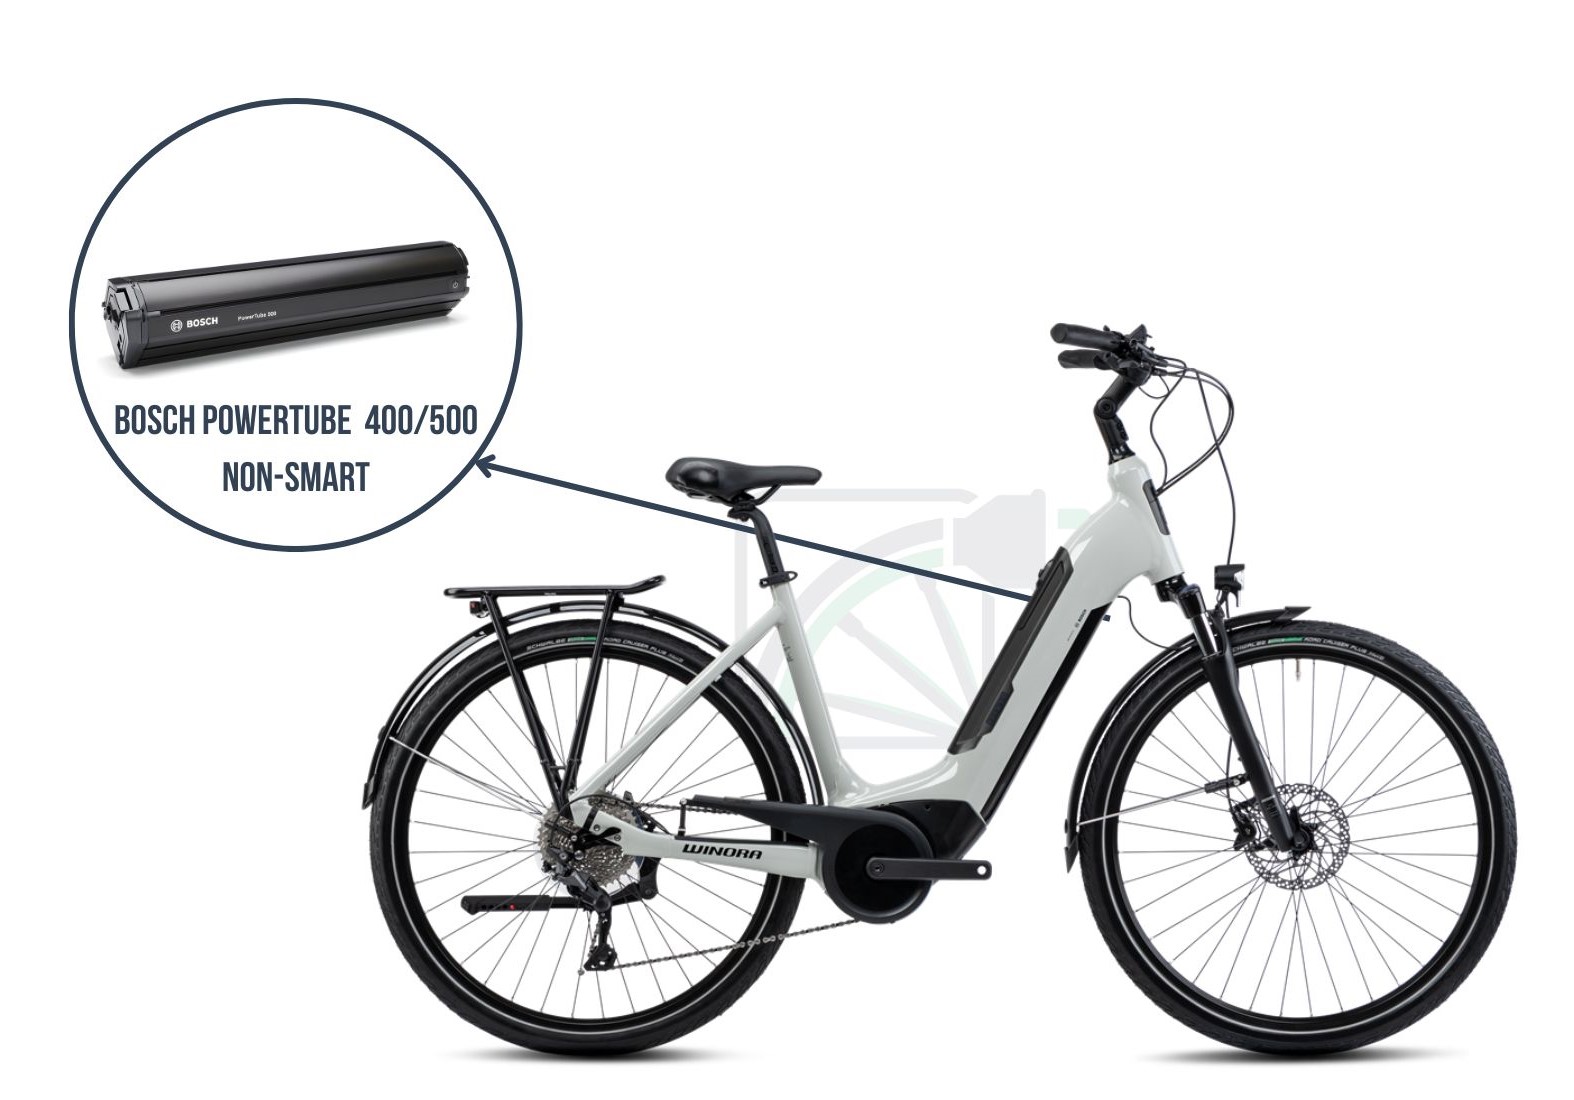 In questa immagine è raffigurata la Winora Sinus Tria 10. Viene messa in evidenza la batteria corrispondente a questa bicicletta, ovvero la Bosch Powertube 400/500 non-SMART.